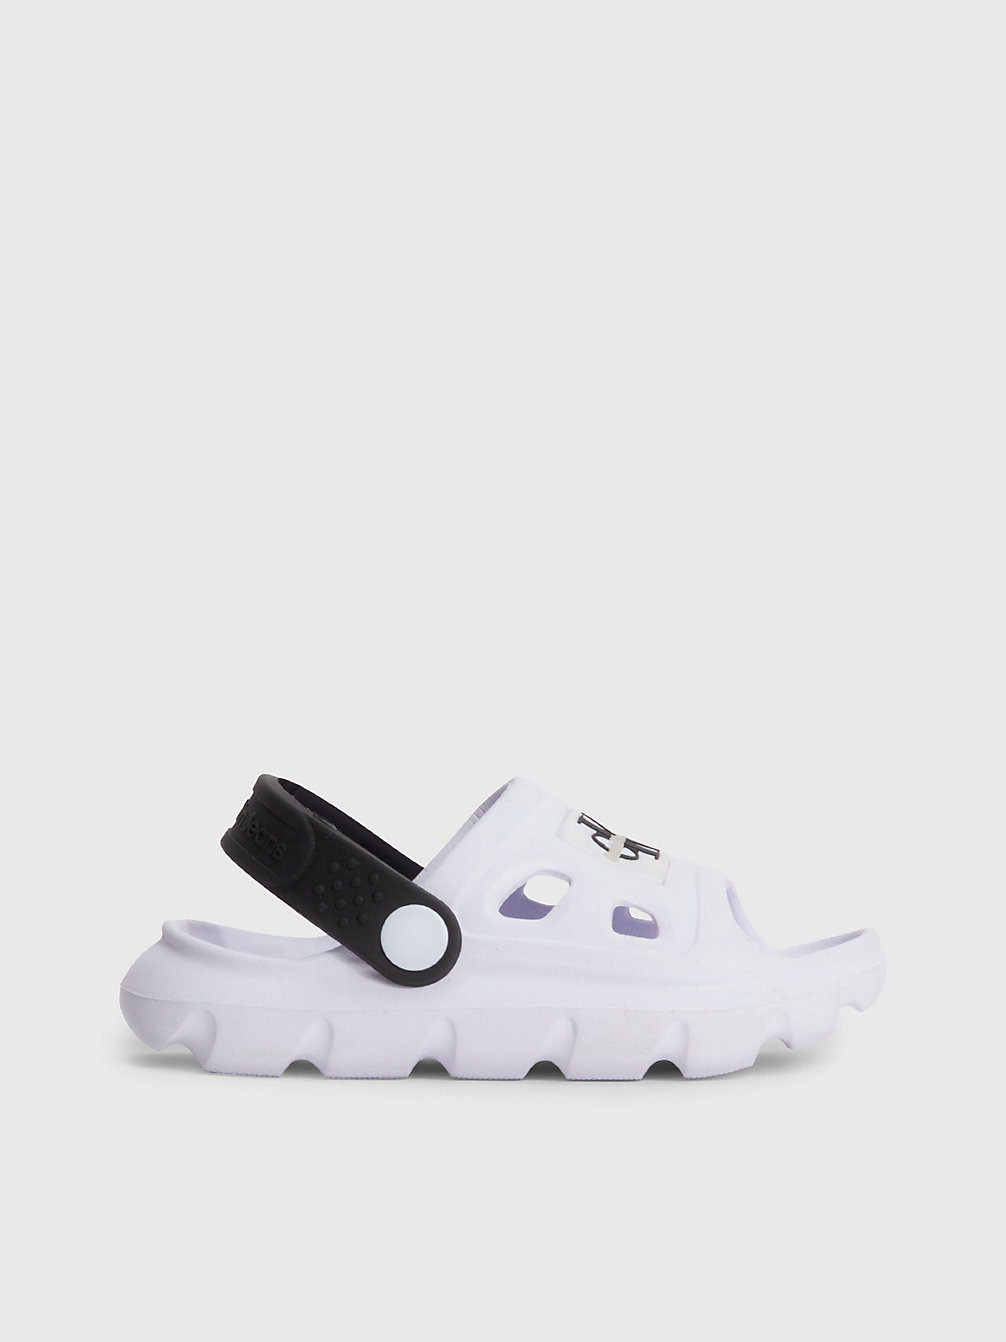 WHITE / BLACK Clog Sandals undefined kids unisex Calvin Klein